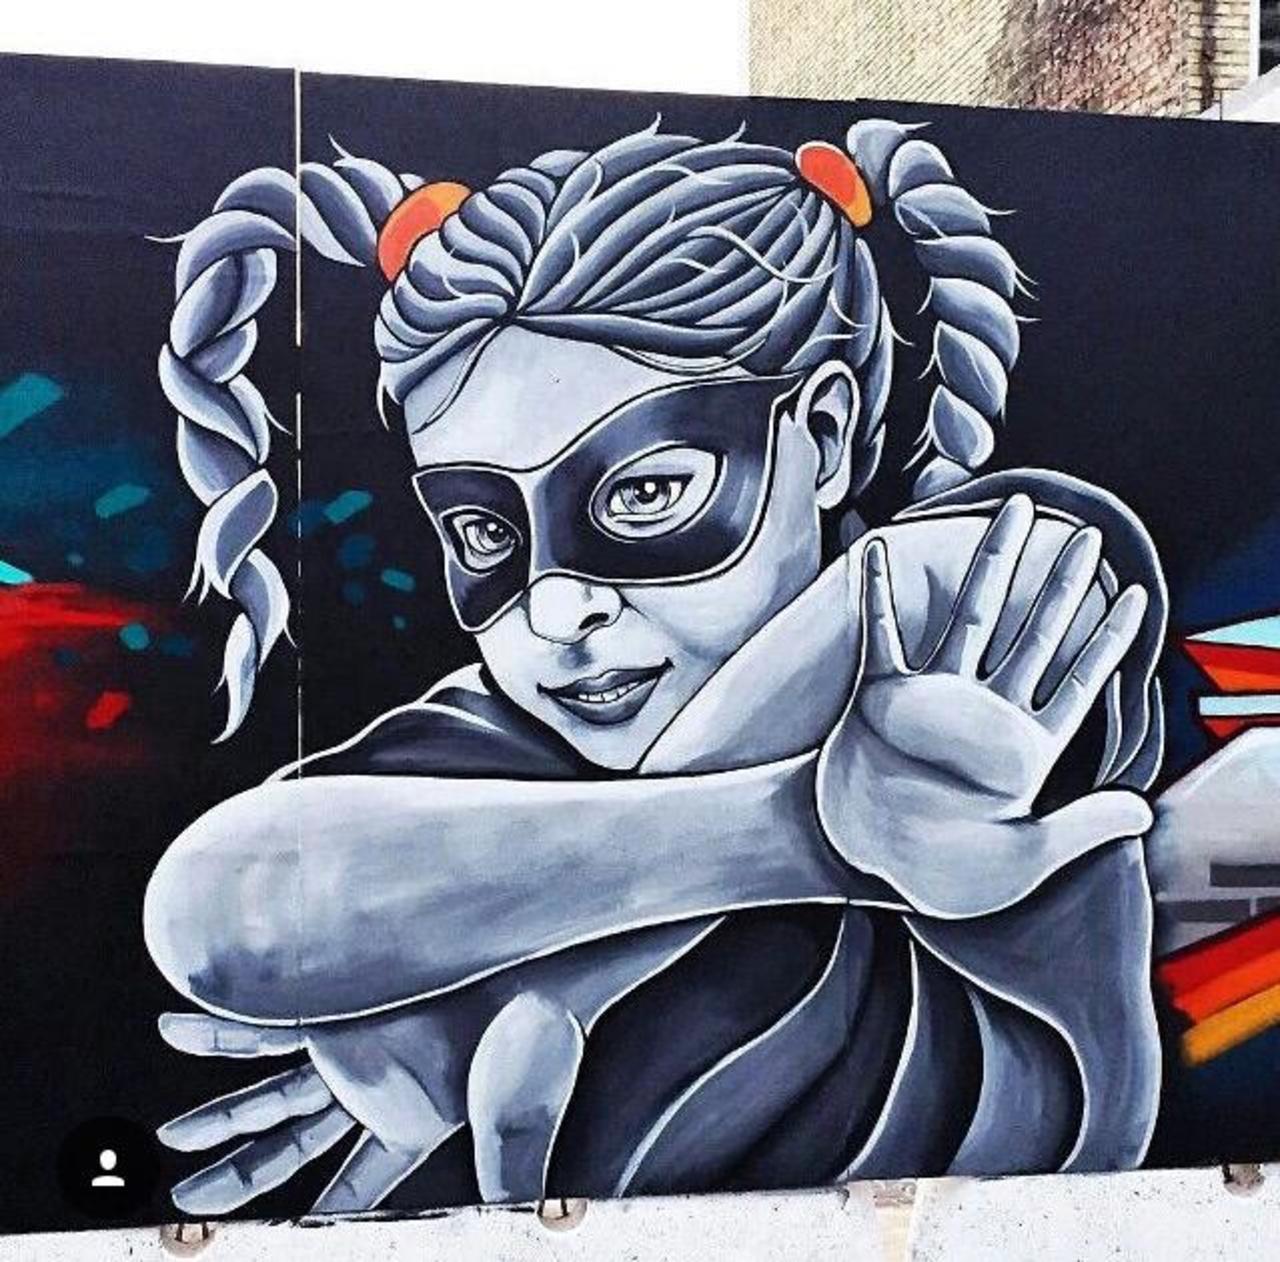 Street Art by Stinehvid 

#art #graffiti #mural #streetart http://t.co/d6ZKsma5Z9 http://cur.lv/qp6mi https://goo.gl/7kifqw